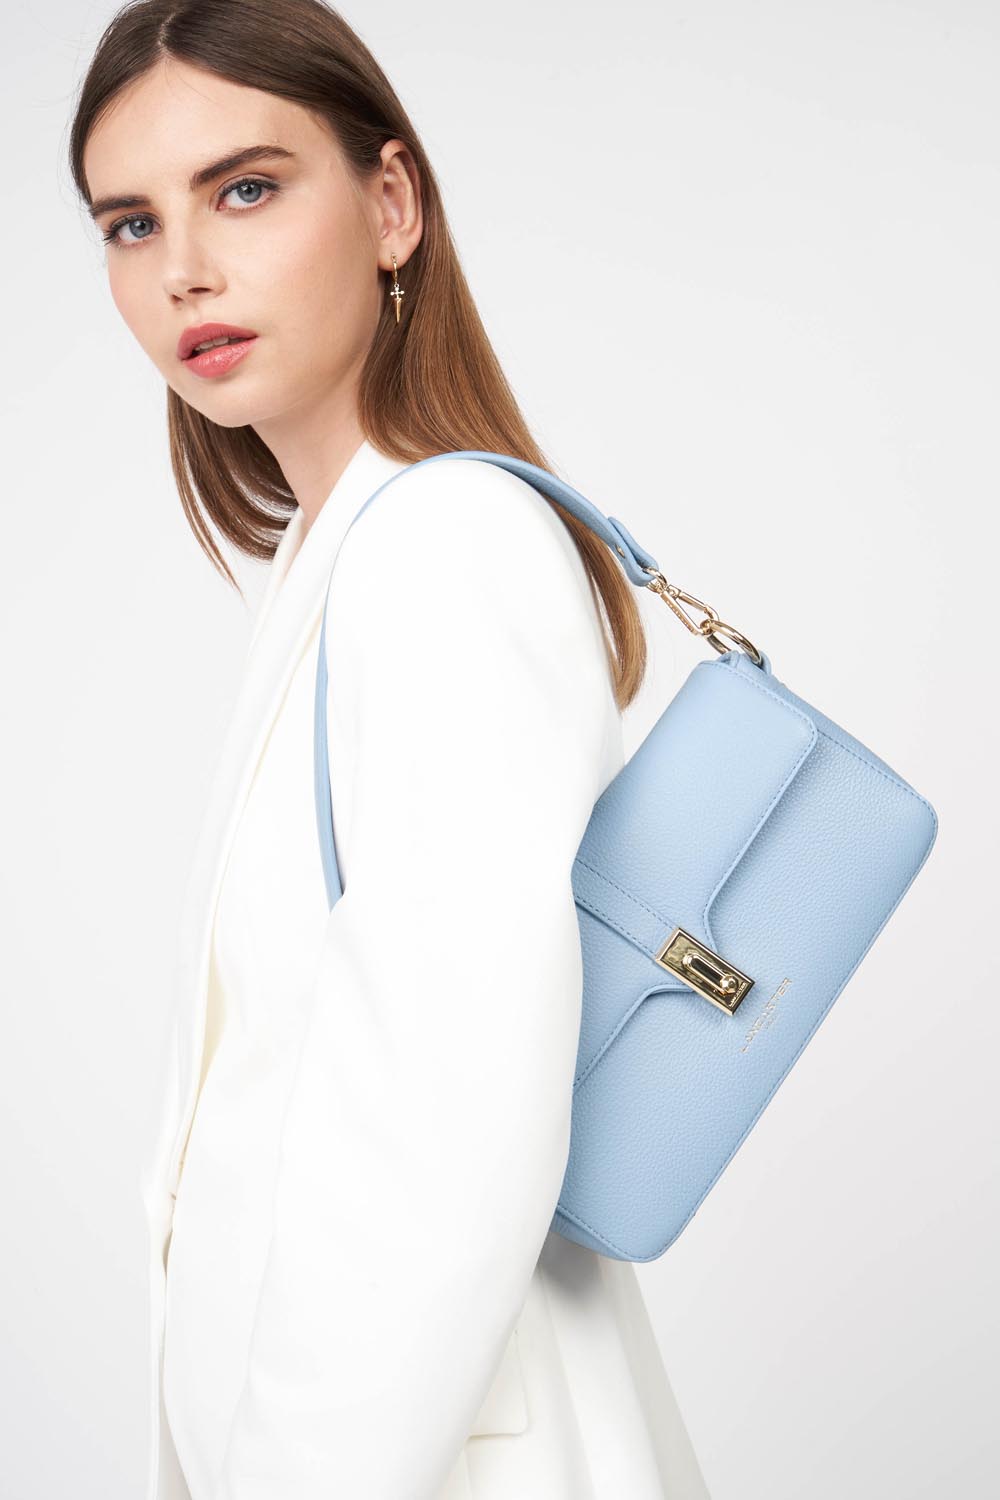 sac baguette - foulonné milano #couleur_bleu-ciel